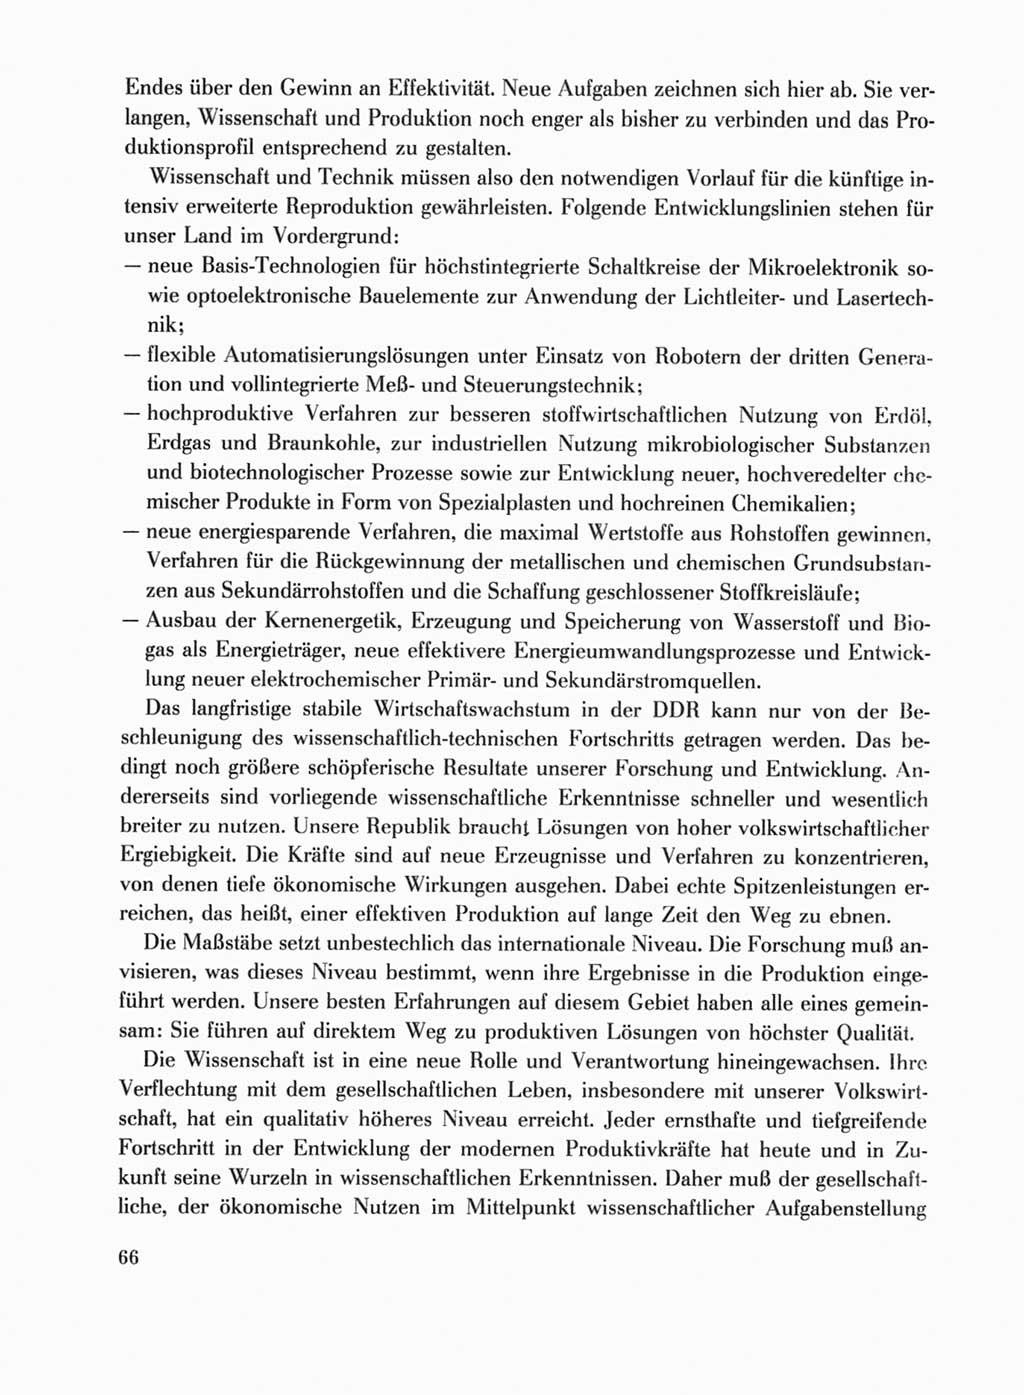 Protokoll der Verhandlungen des Ⅹ. Parteitages der Sozialistischen Einheitspartei Deutschlands (SED) [Deutsche Demokratische Republik (DDR)] 1981, Band 1, Seite 66 (Prot. Verh. Ⅹ. PT SED DDR 1981, Bd. 1, S. 66)